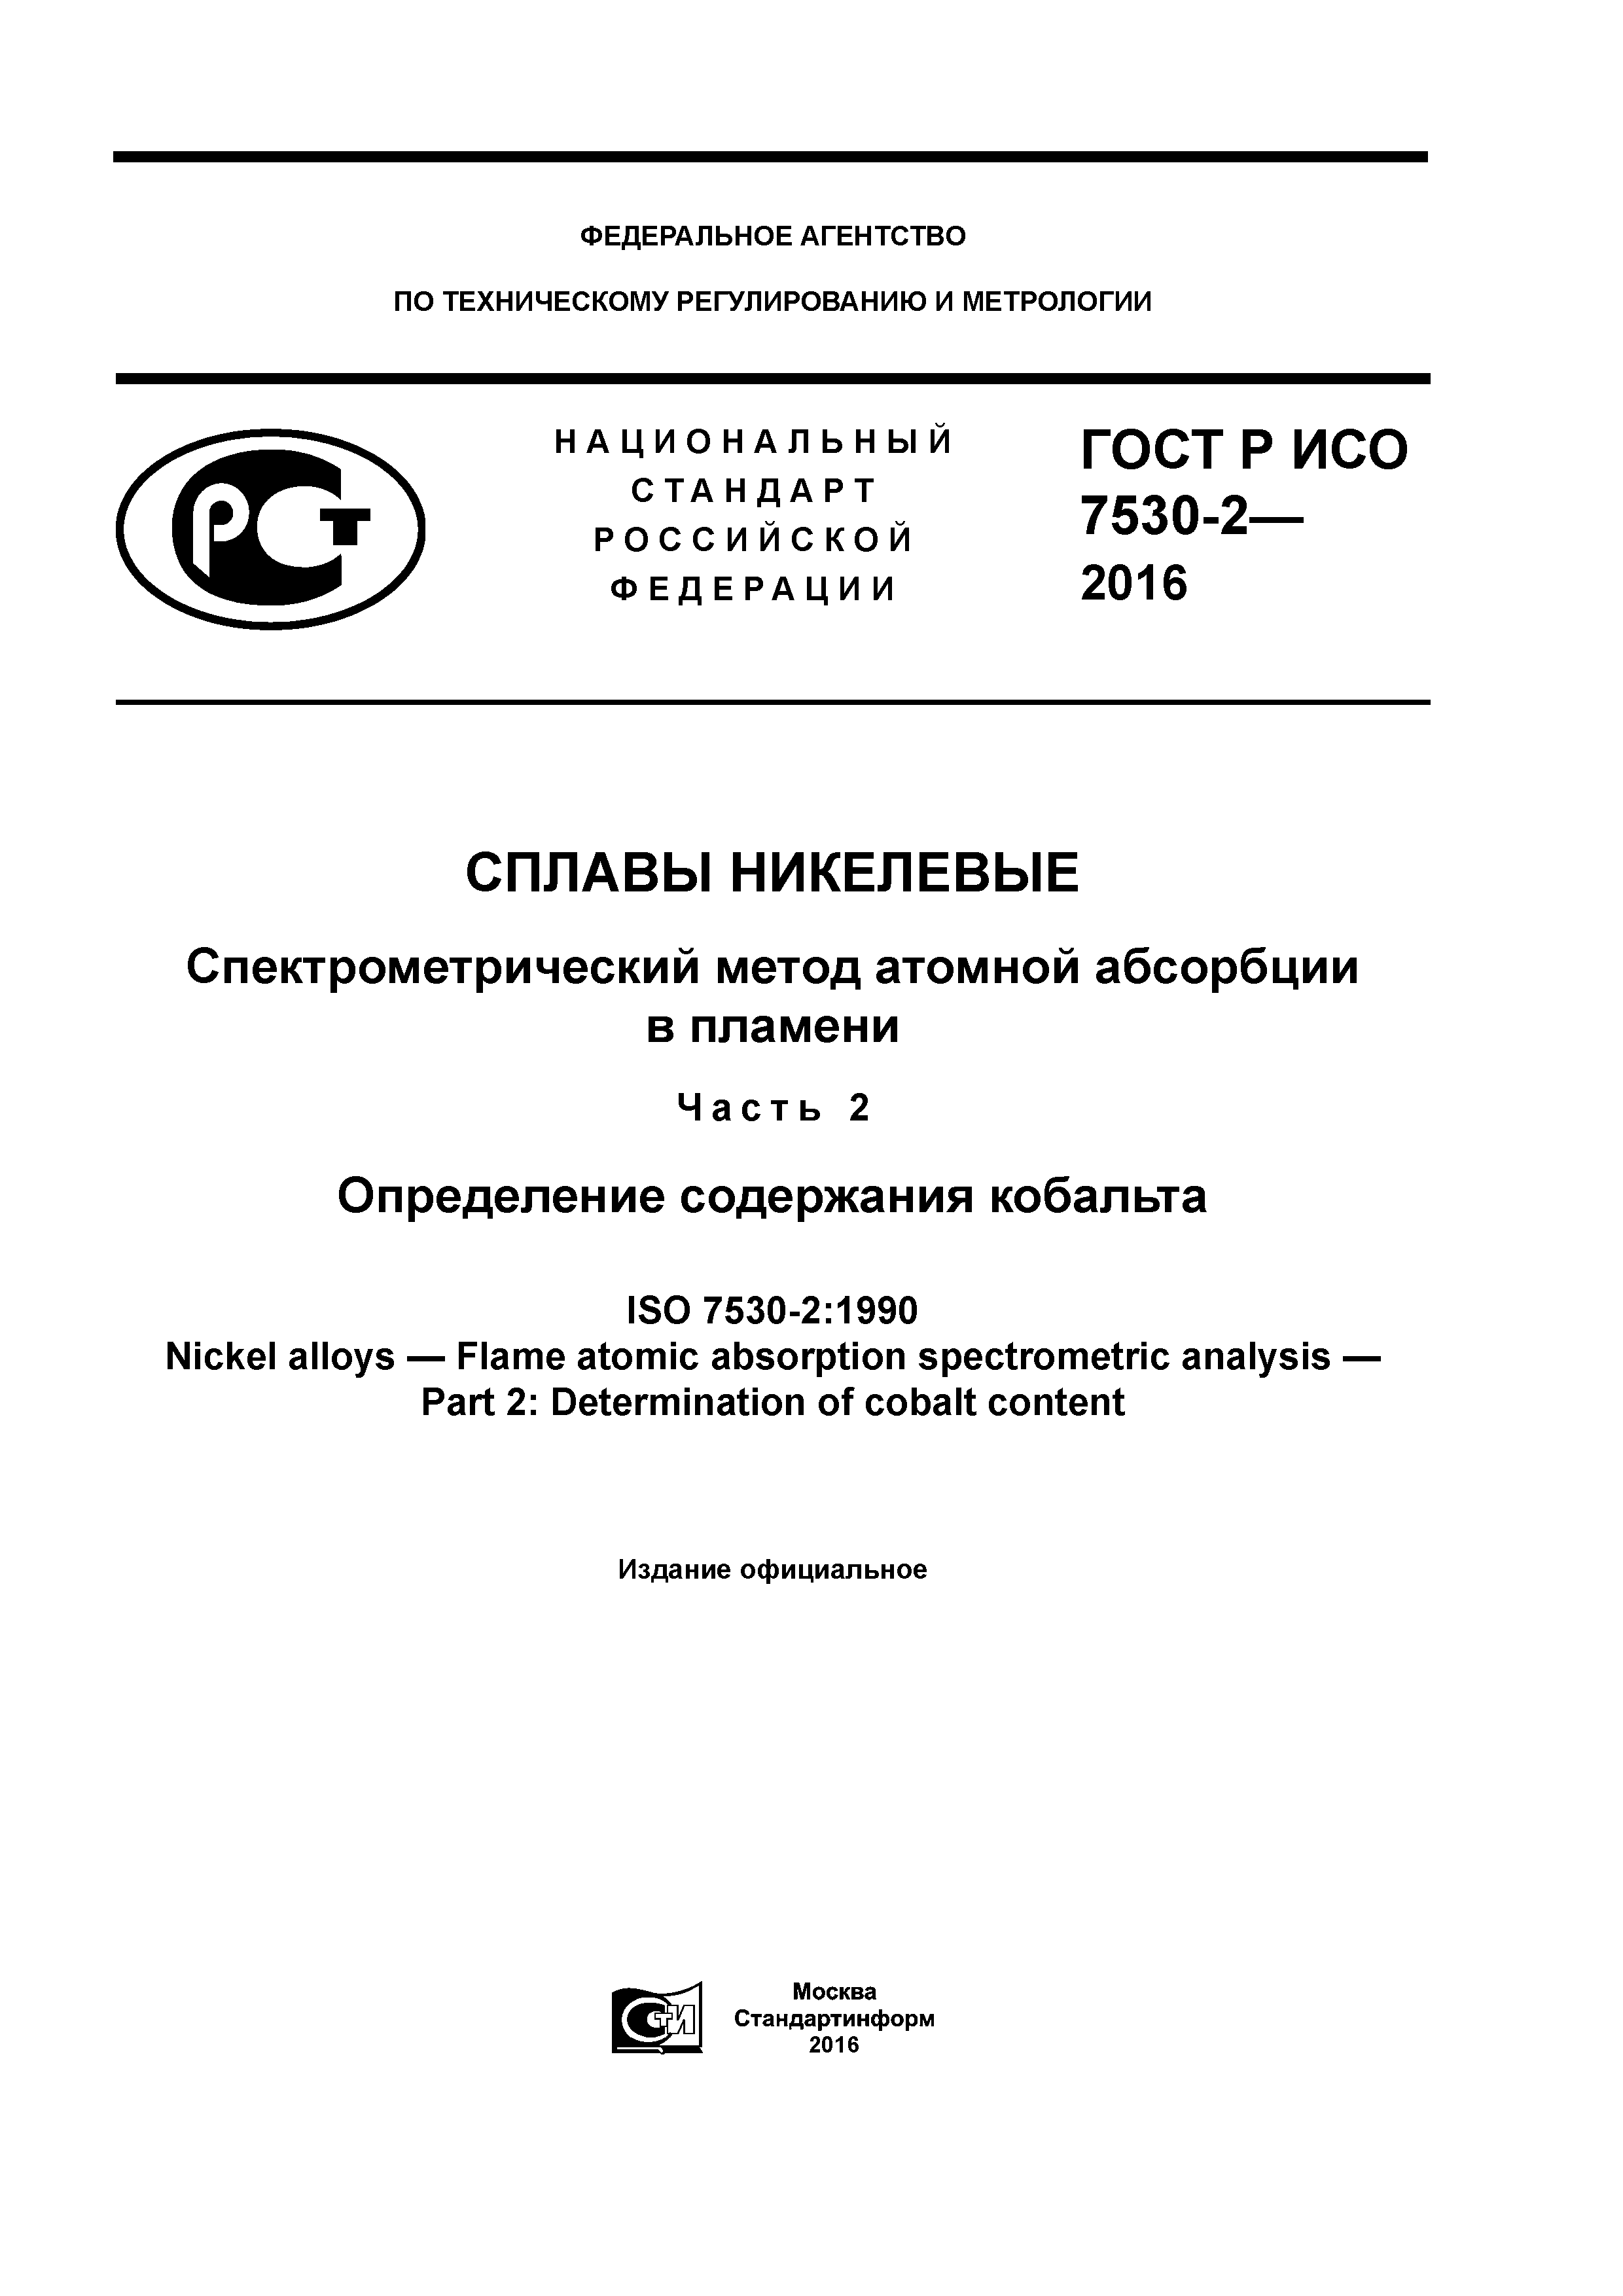 ГОСТ Р ИСО 7530-2-2016